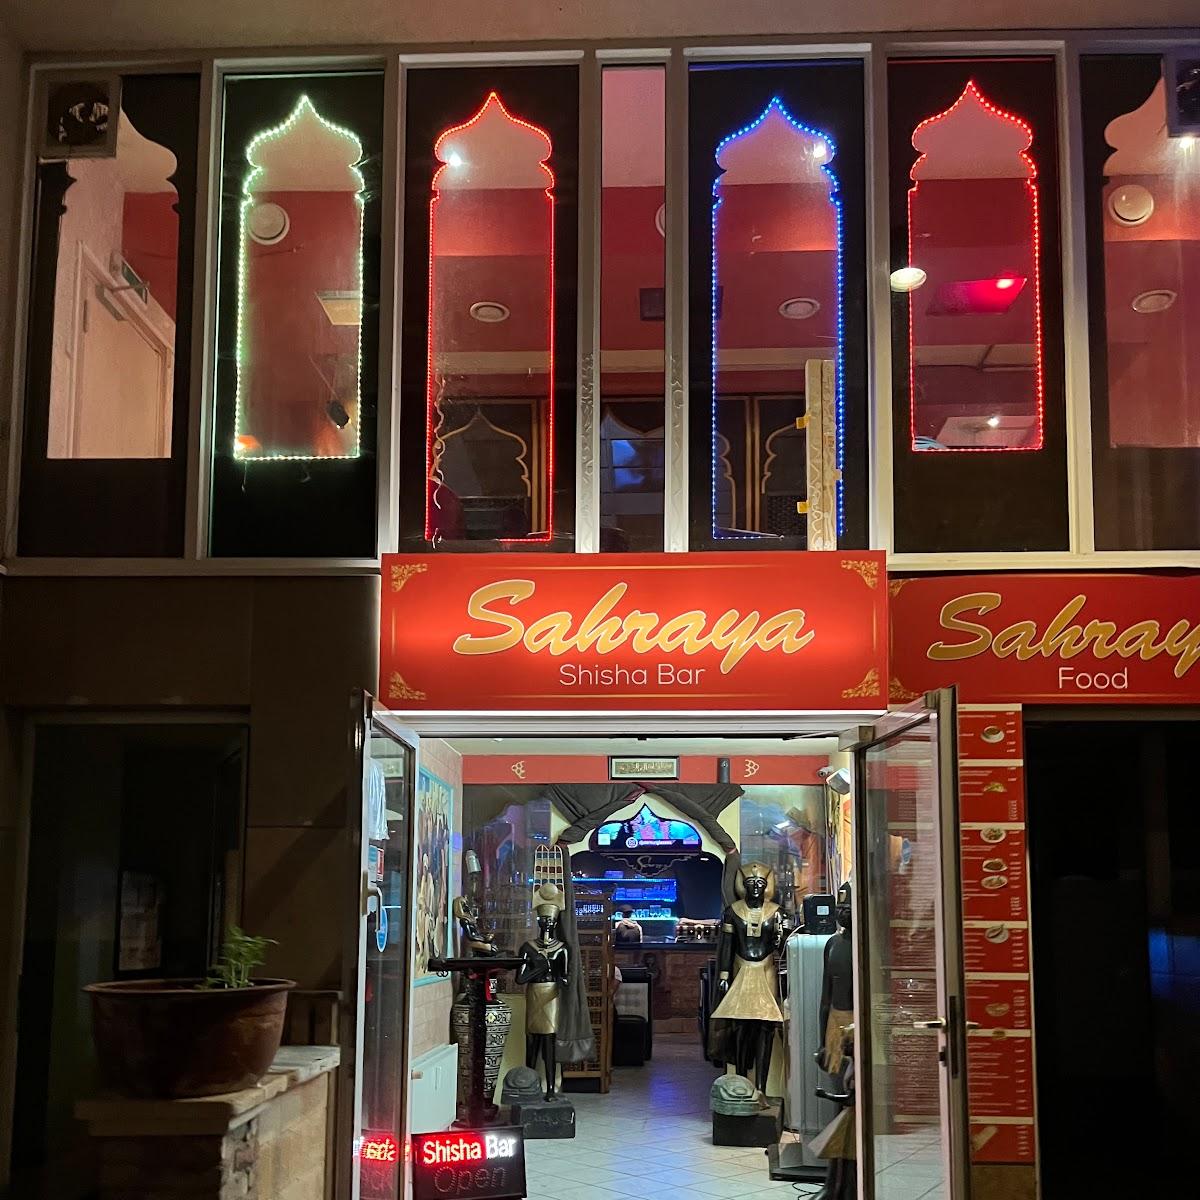 Restaurant "Sehraya Shisha Lounge" in Berlin